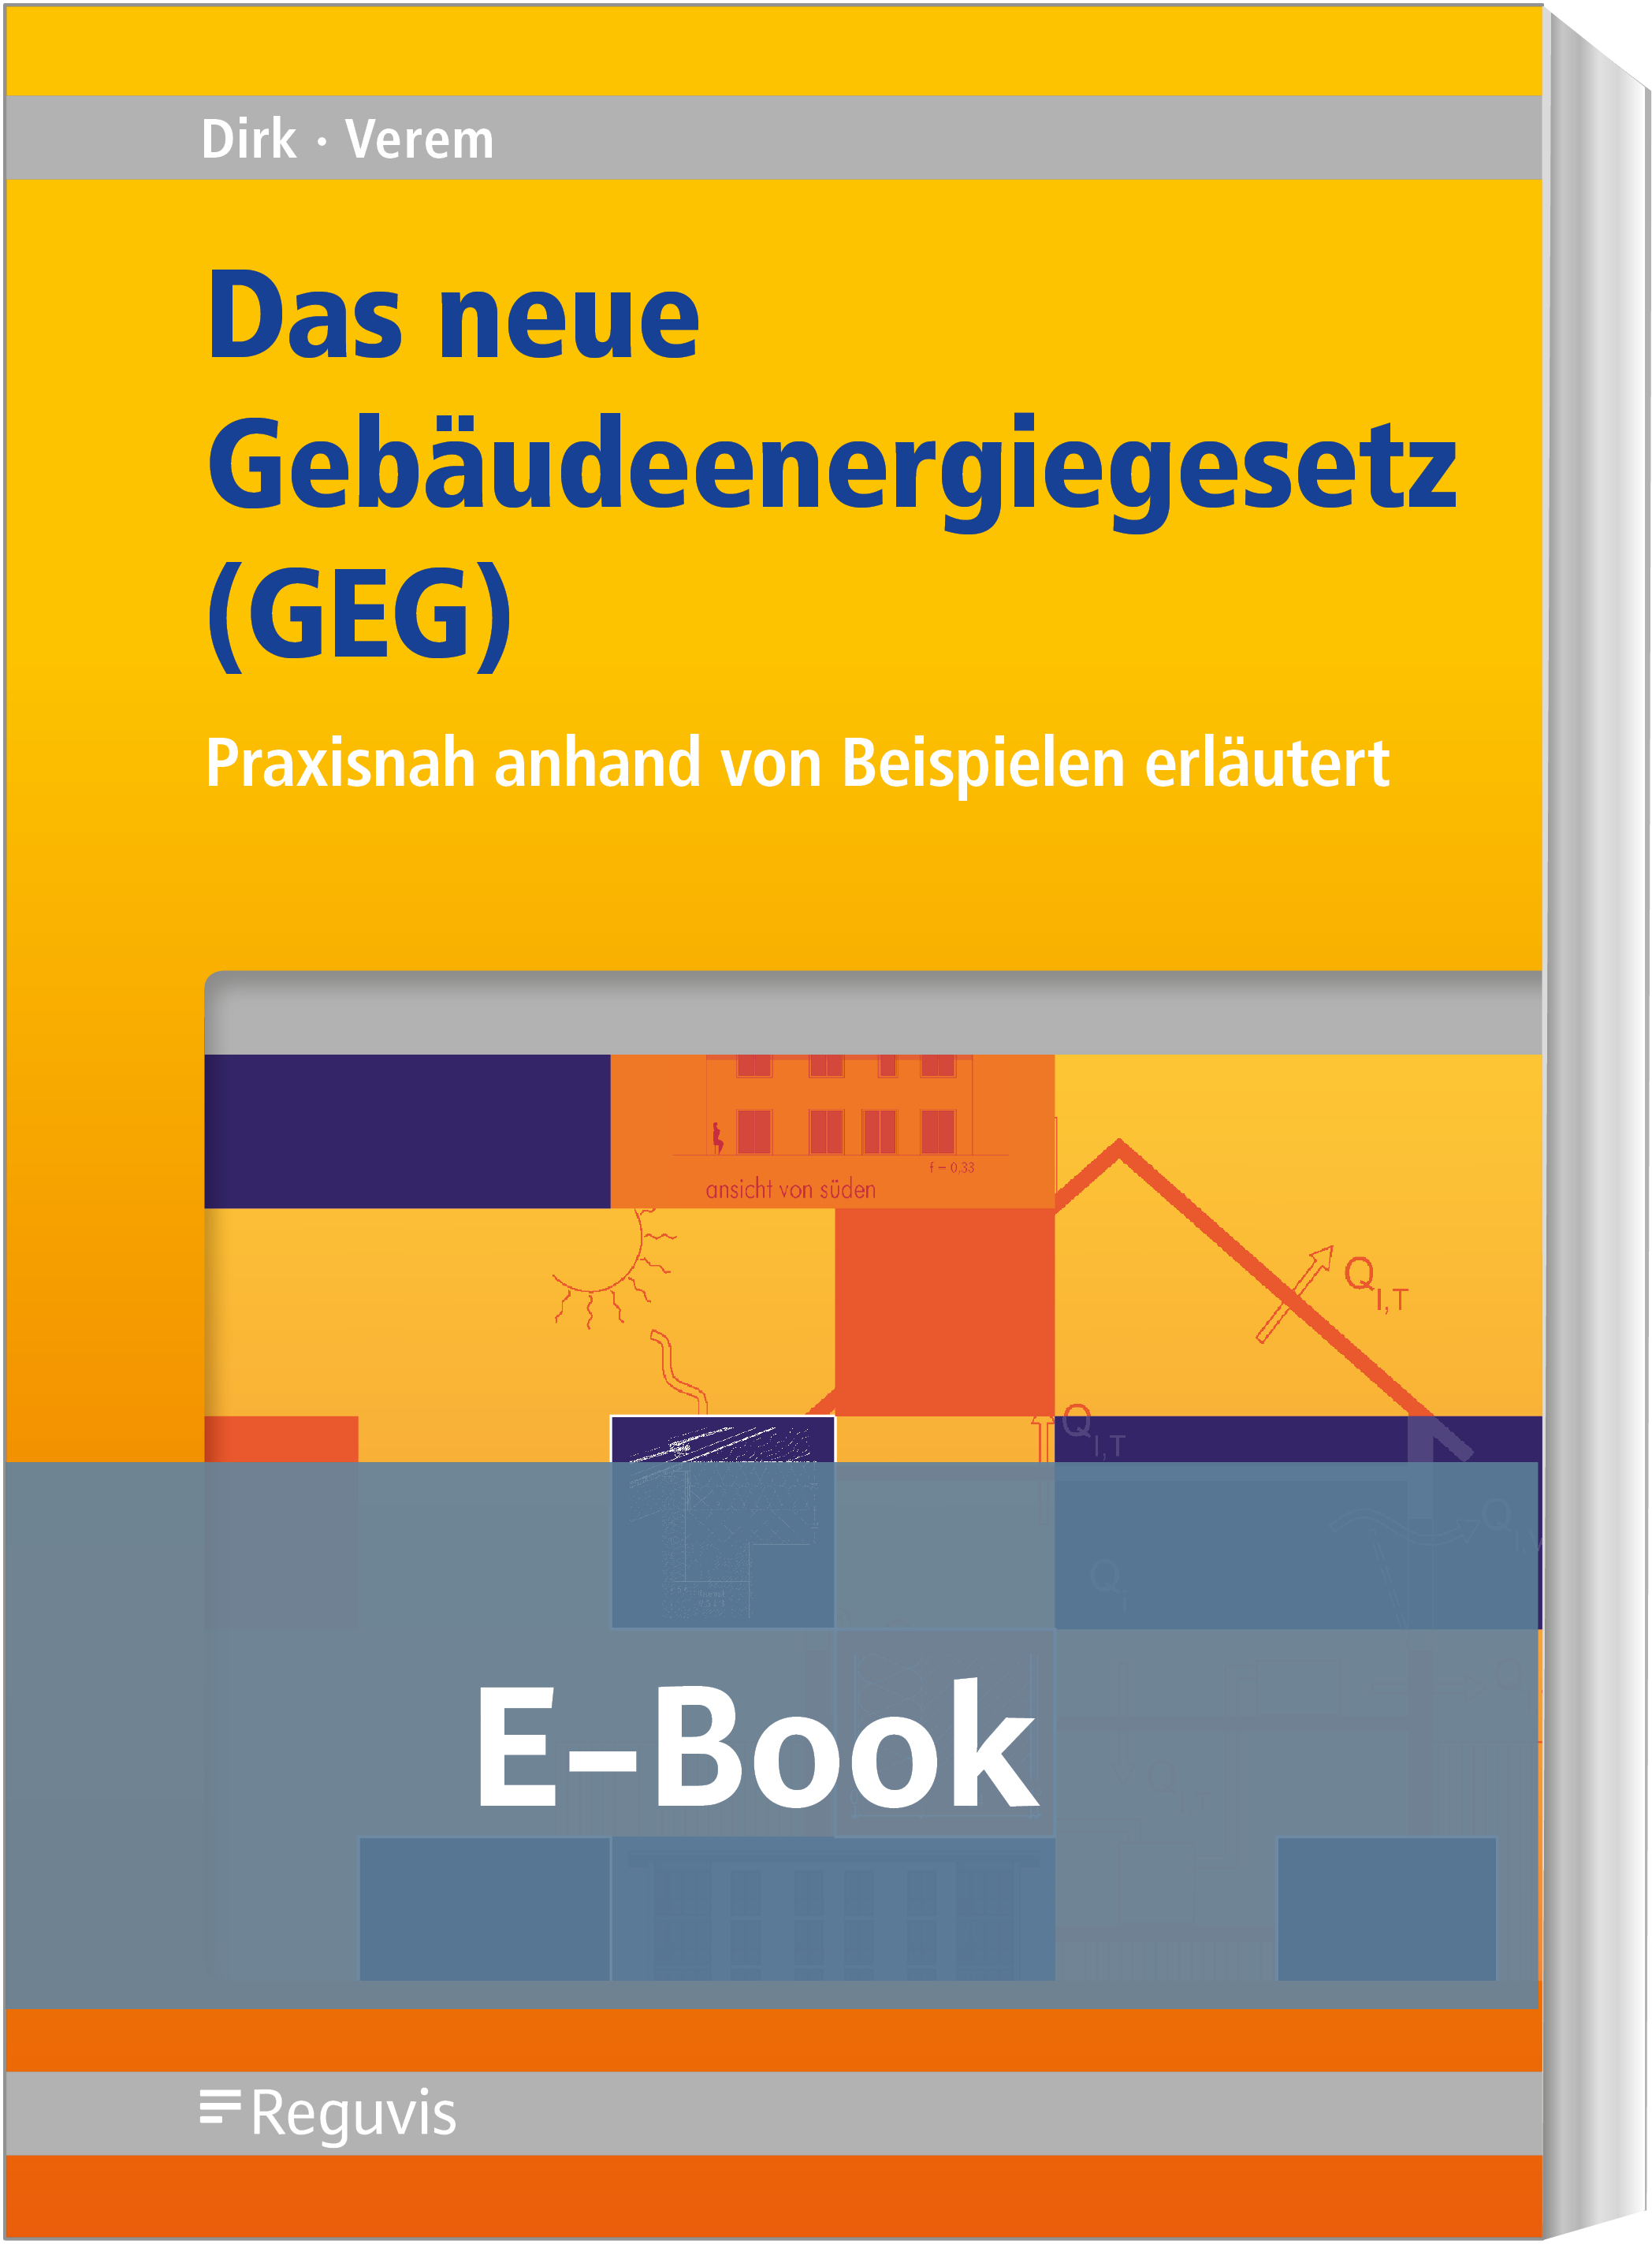 Dirk/Verem; Das neue Gebäudeenergiegesetz (GEG) E-Book